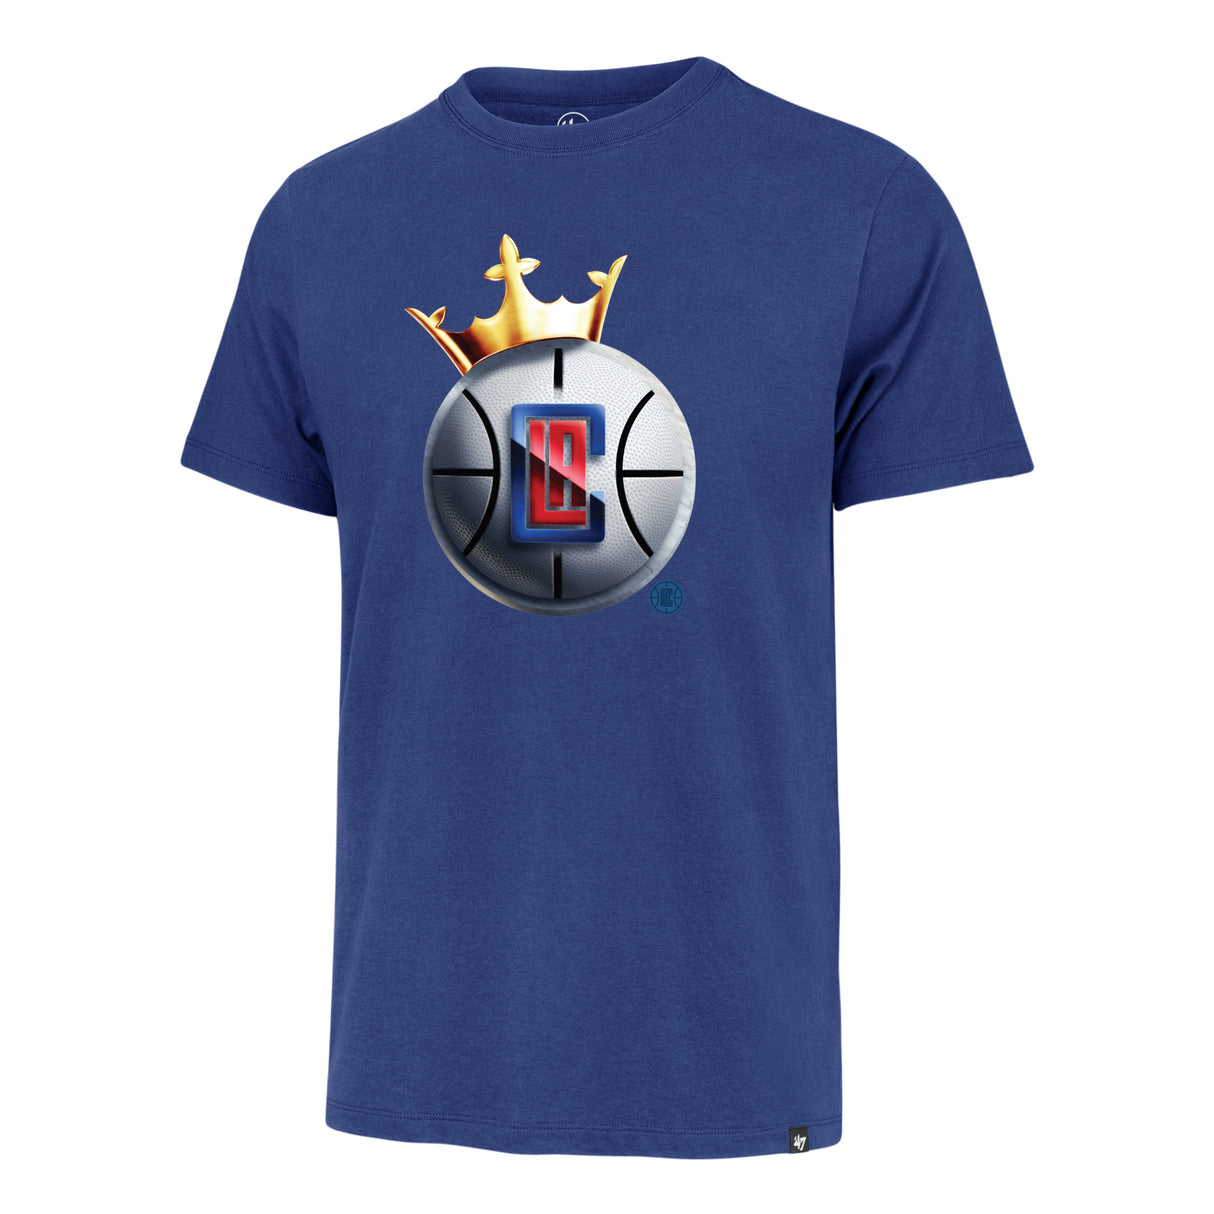 LA Clippers Crown '47 Men's Franklin T-Shirt